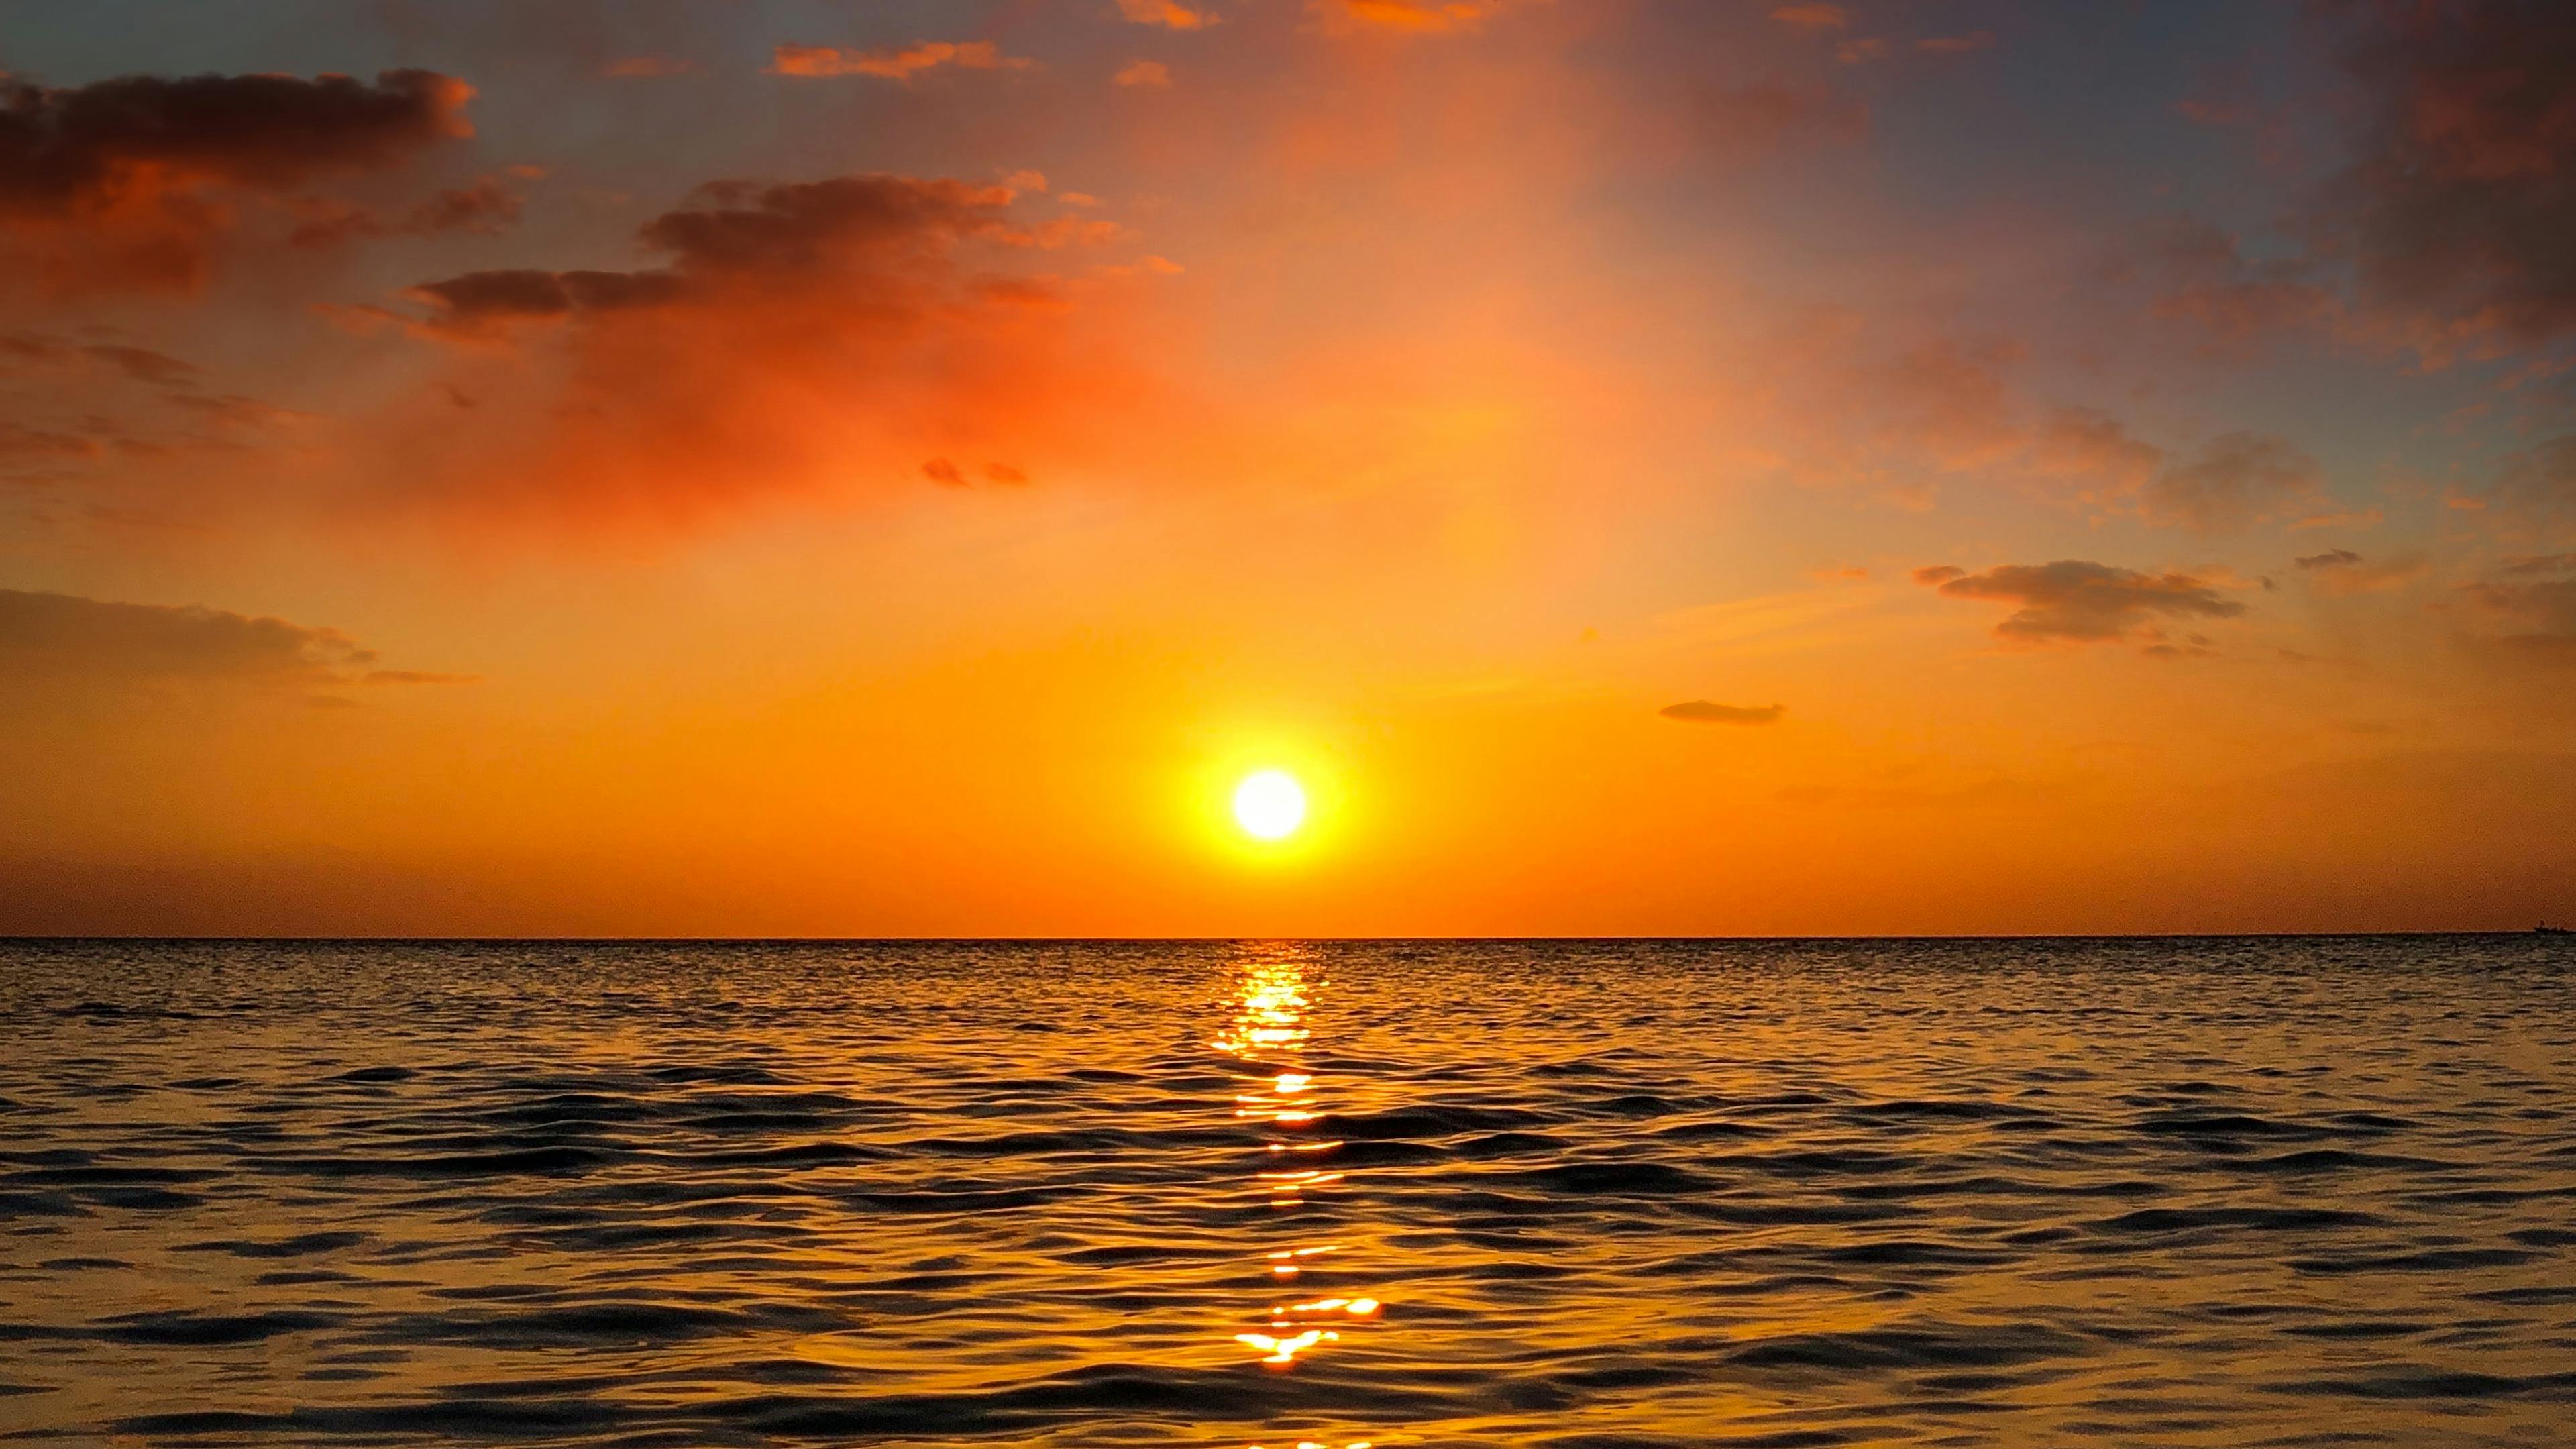 Beautiful Scenery of Sunset · Free Stock Photo